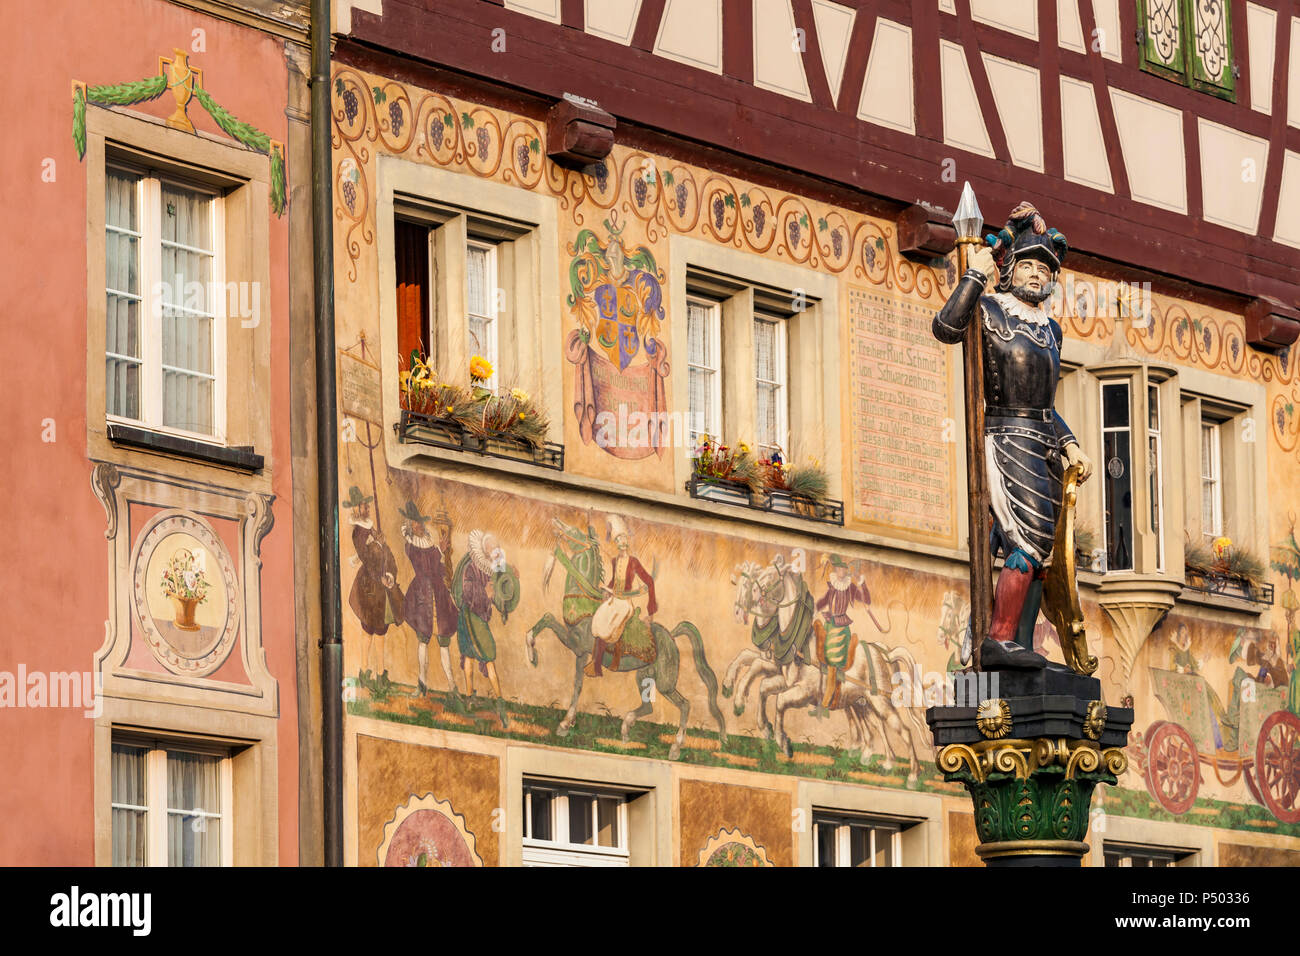 La Svizzera, Stein am Rhein, città vecchia, case storiche a piazza Municipio, dipinti ad affresco, scultura su fontana Foto Stock